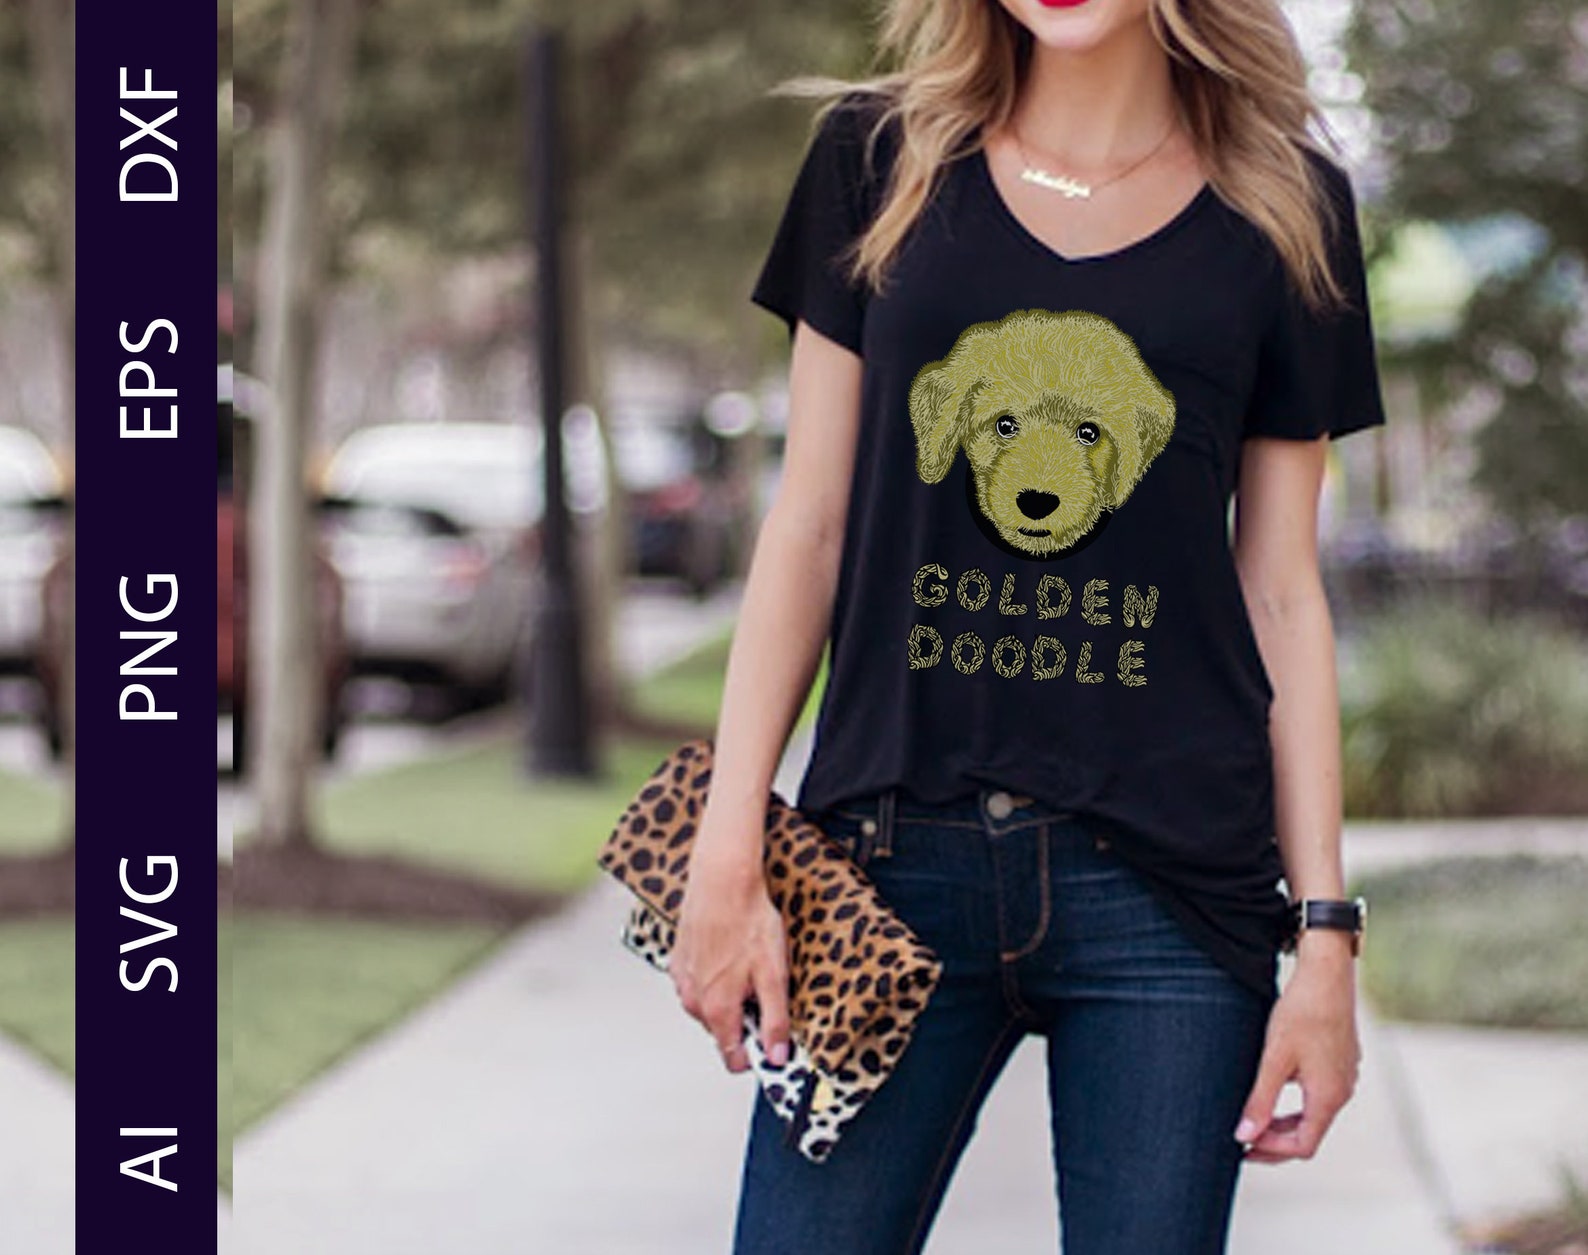 Goldendoodle SVG Dogs SVG Digital Instant Download Ai Eps - Etsy Hong Kong